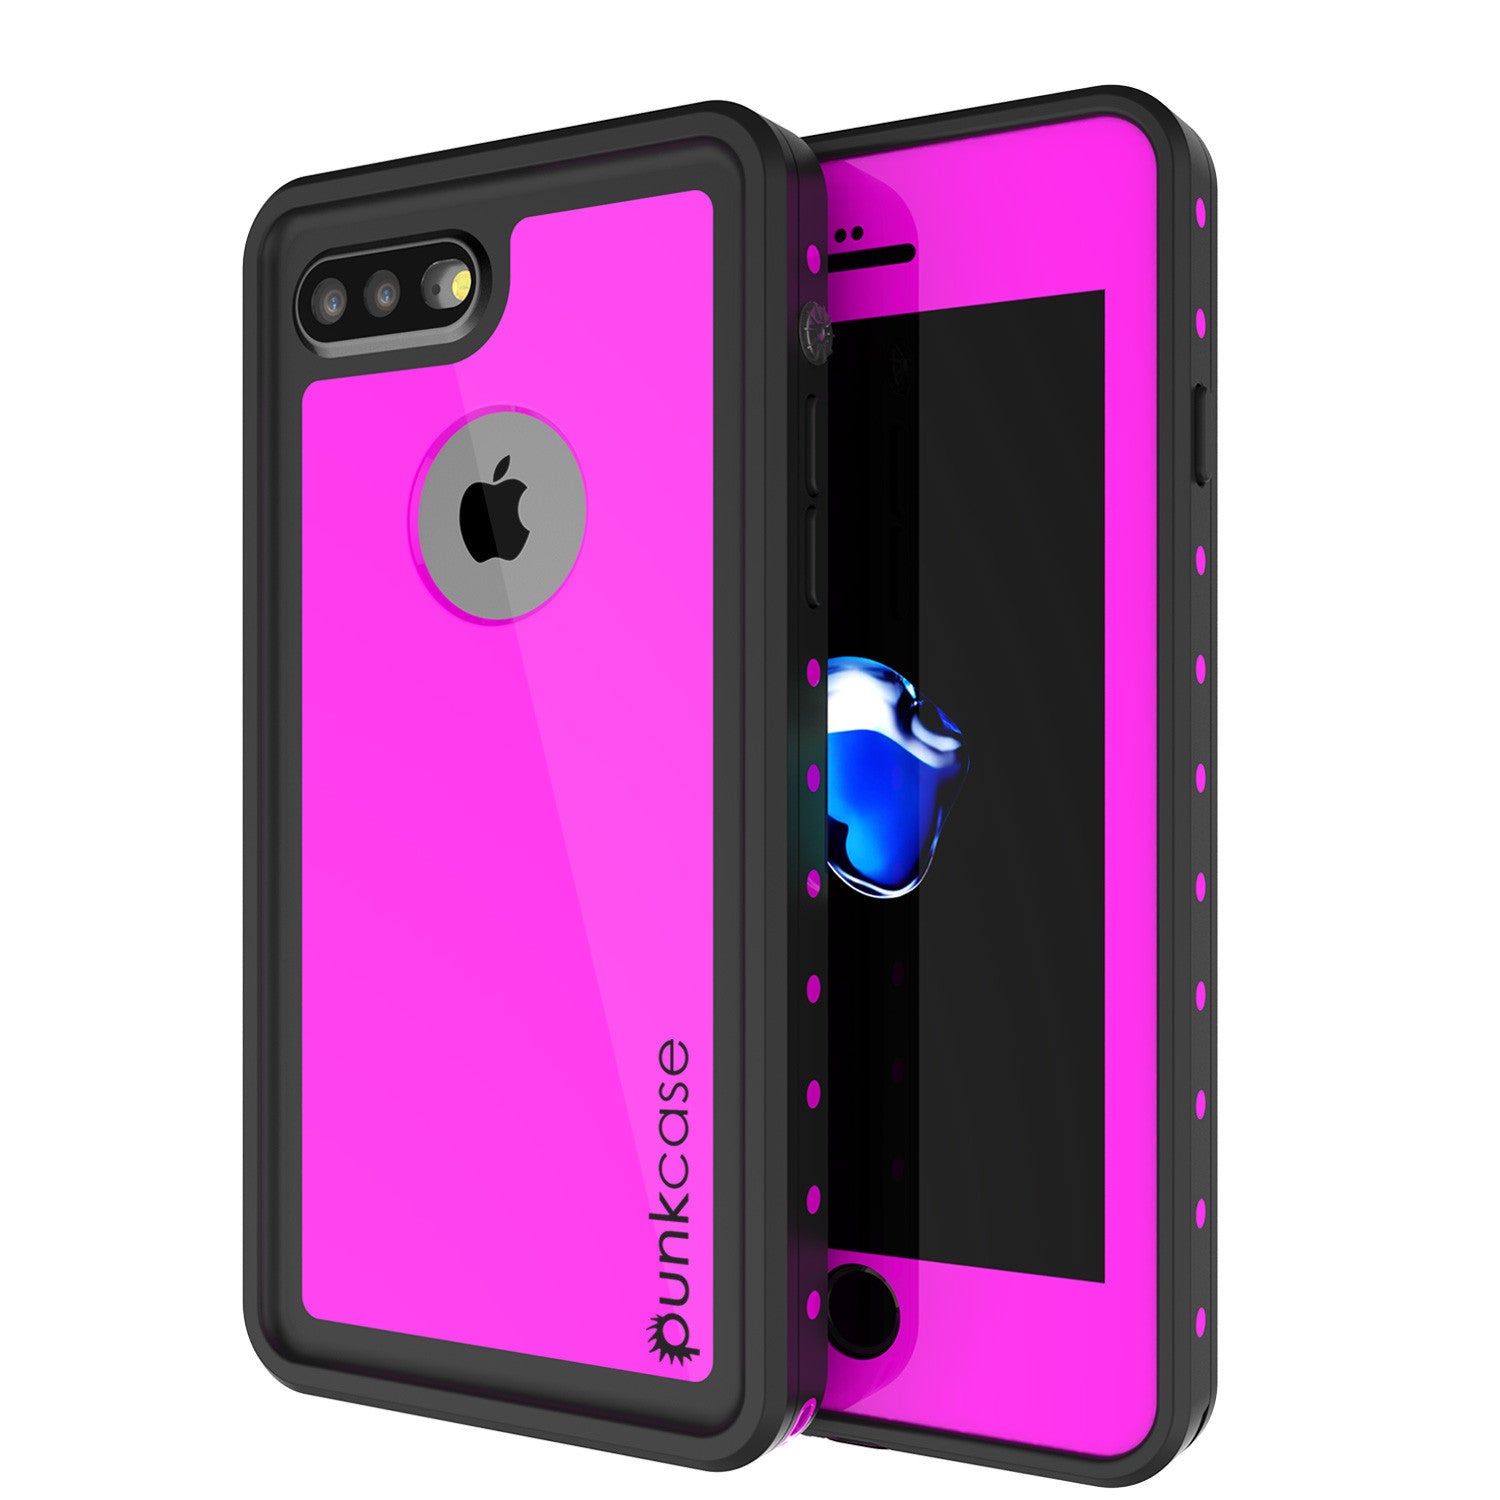 iPhone 7+ Plus Waterproof IP68 Case, Punkcase [Pink] [StudStar Series] [Slim Fit] [Dirtproof] (Color in image: pink)